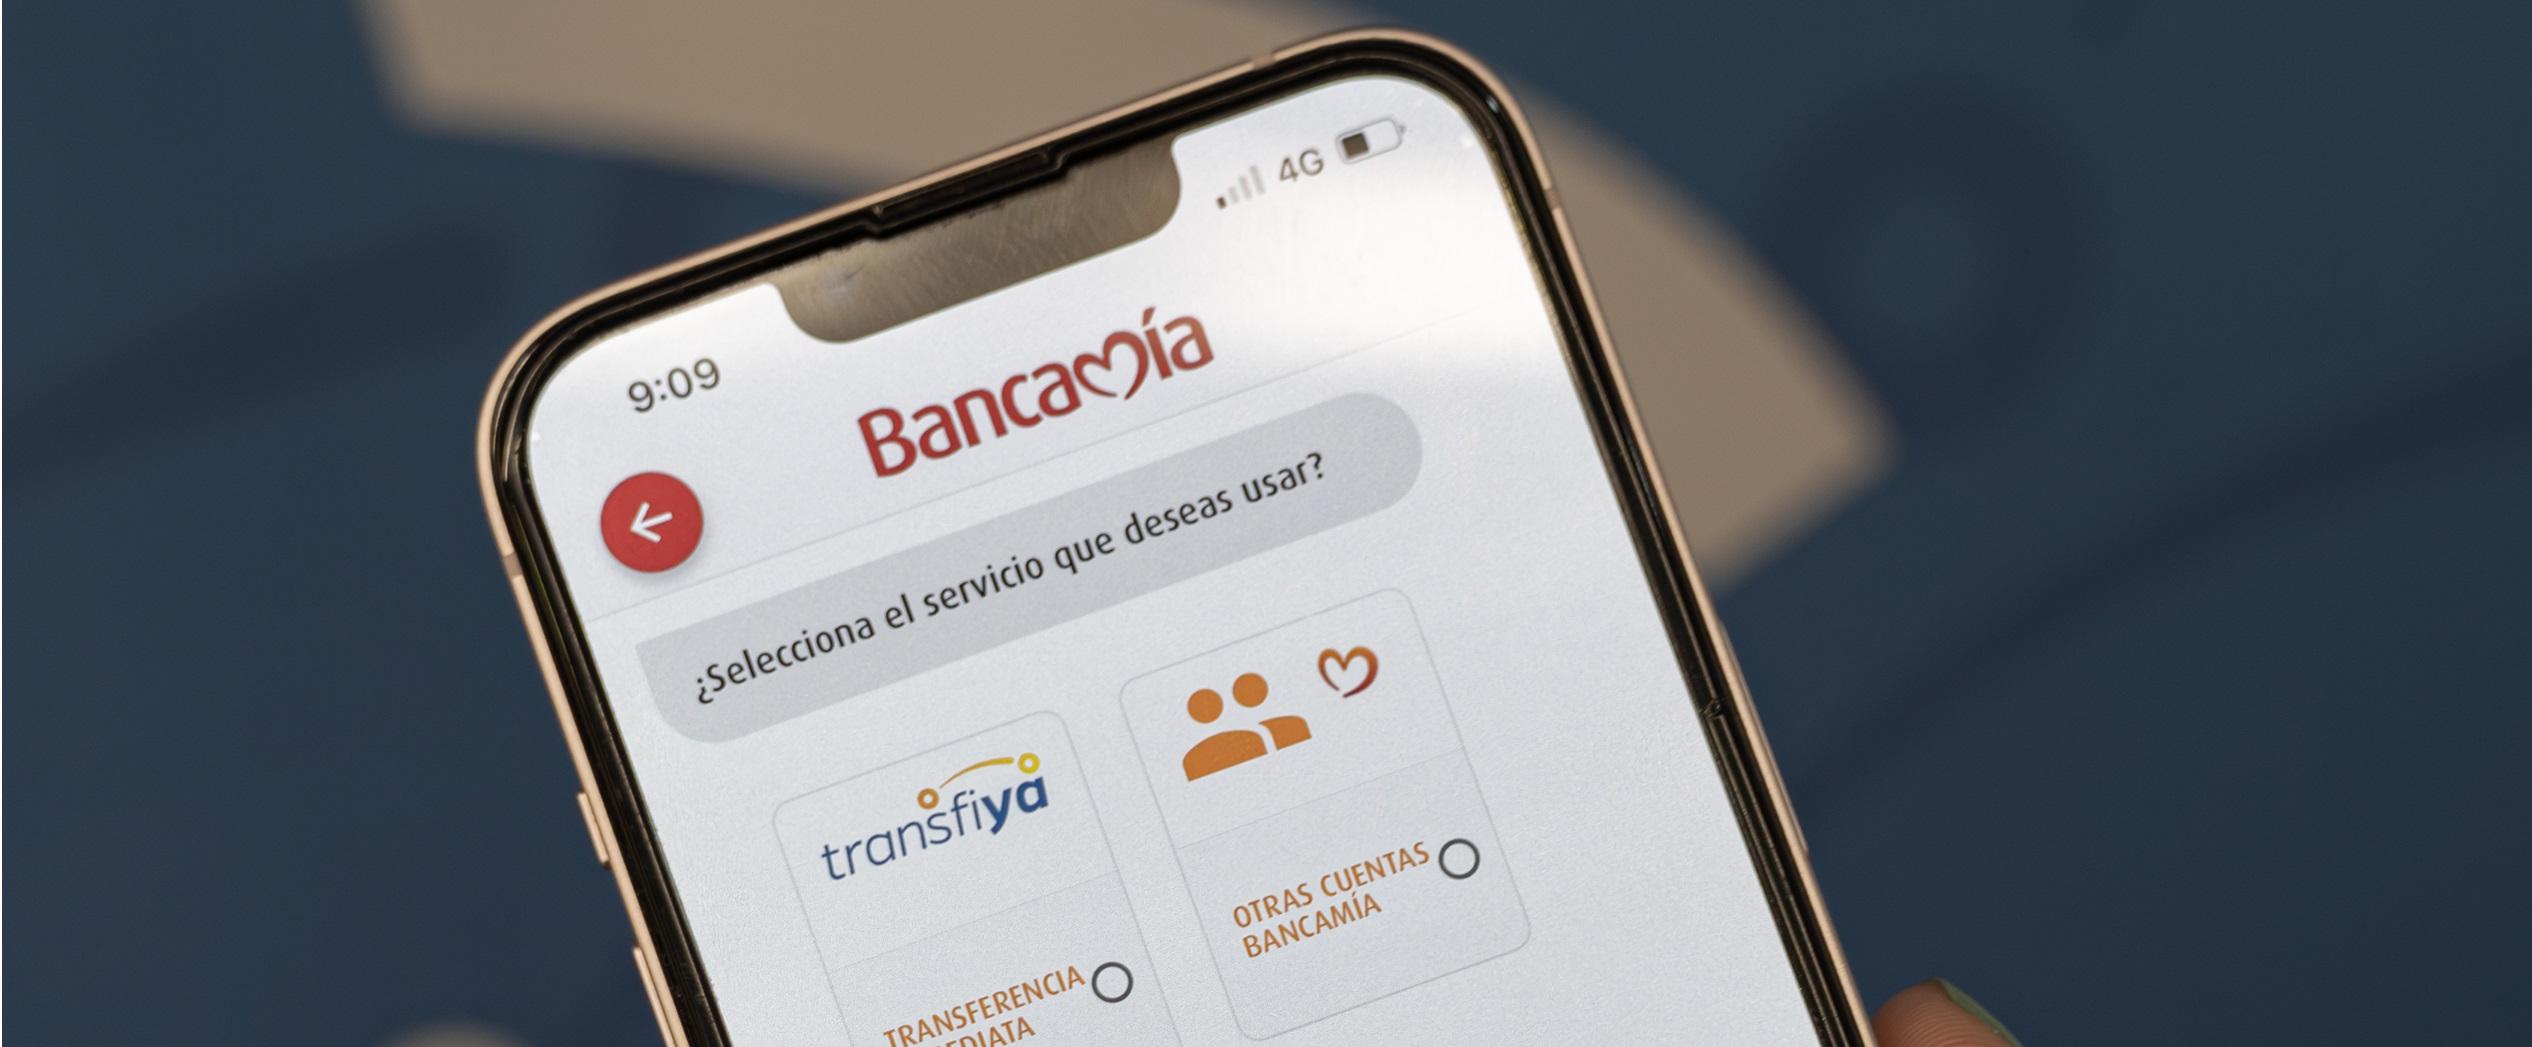 Bancamía se une a Transfiya para habilitar las transferencias interbancarias inmediatas y gratuitas a los microempresarios